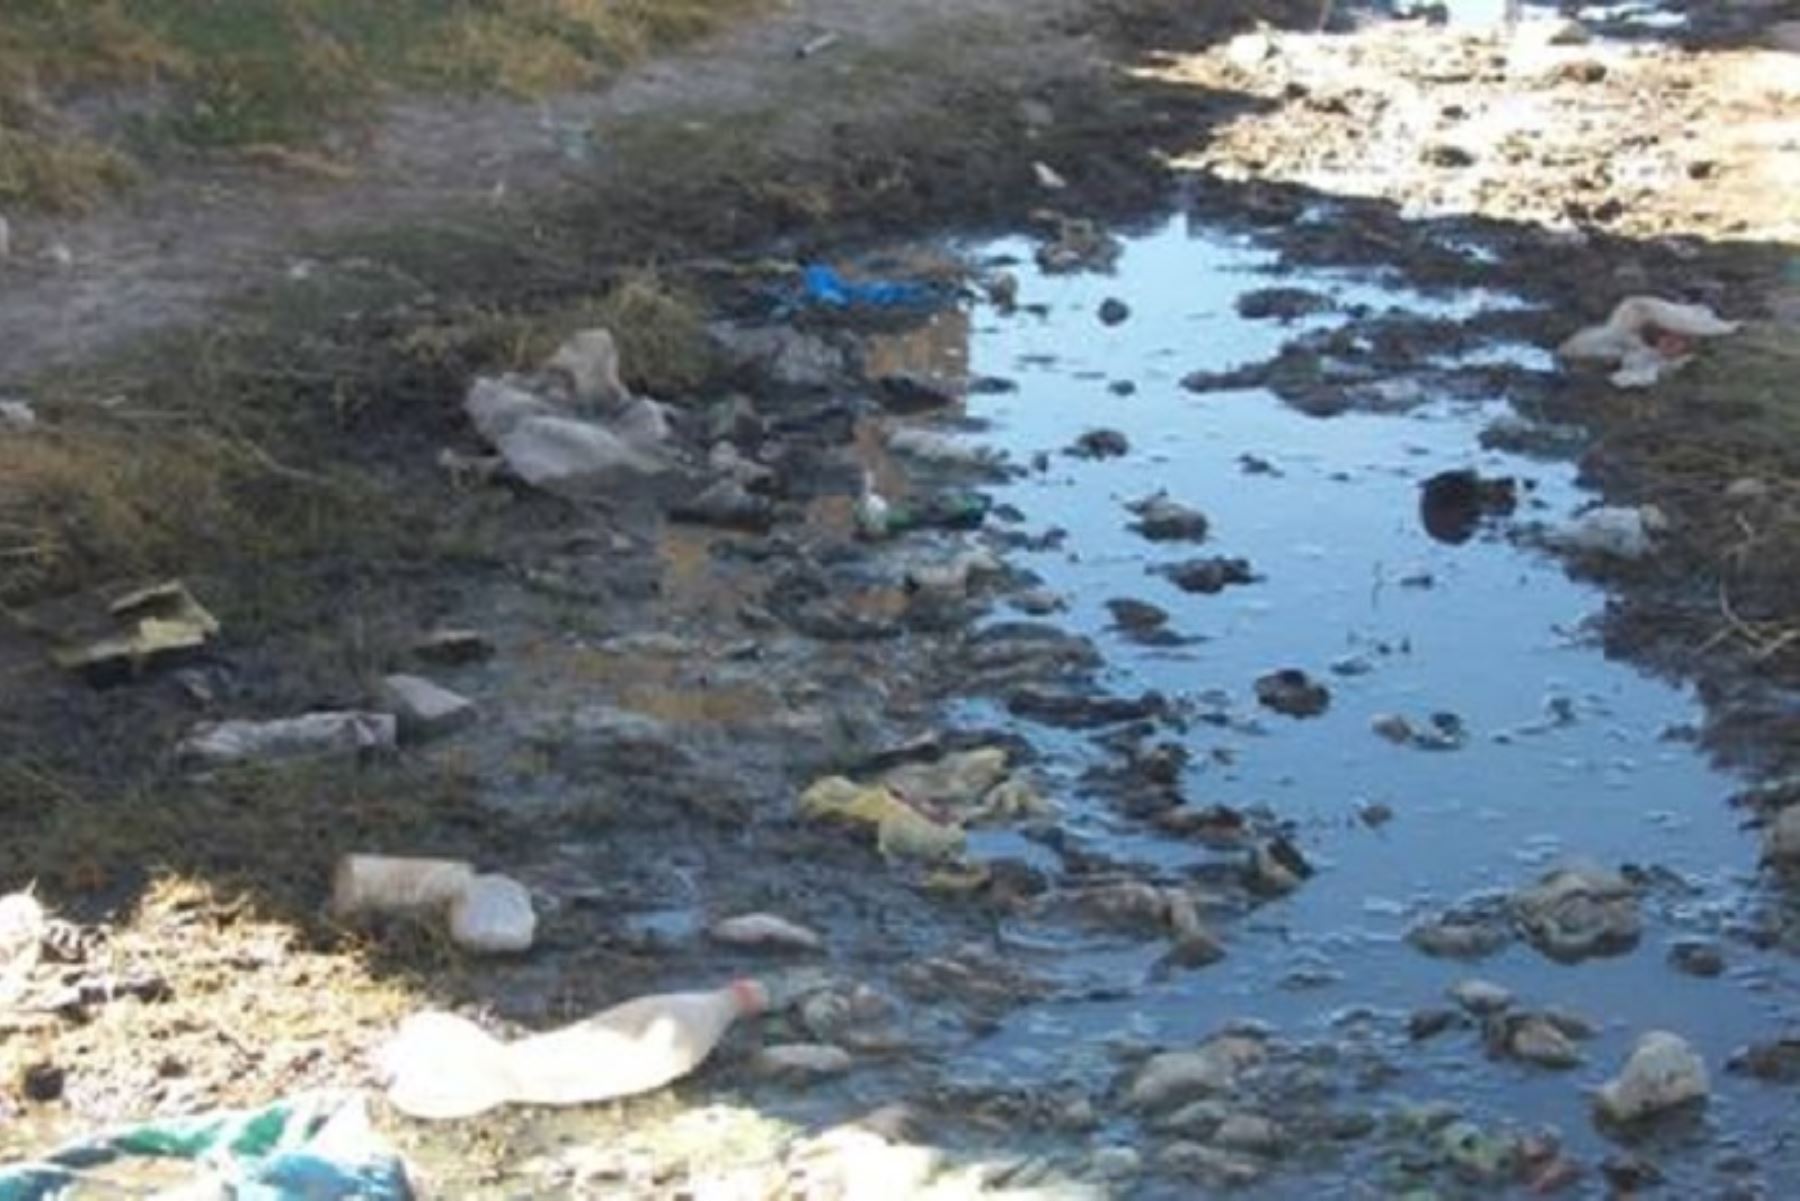 El Ejecutivo declarÃ³ el estado de emergencia por peligro inminente ante contaminaciÃ³n de agua para consumo humano, en los distritos de Coata, Huata y Capachica de la provincia de Puno y en los distritos de Caracoto y Juliaca de la provincia de San RomÃ¡n, departamento de Puno.